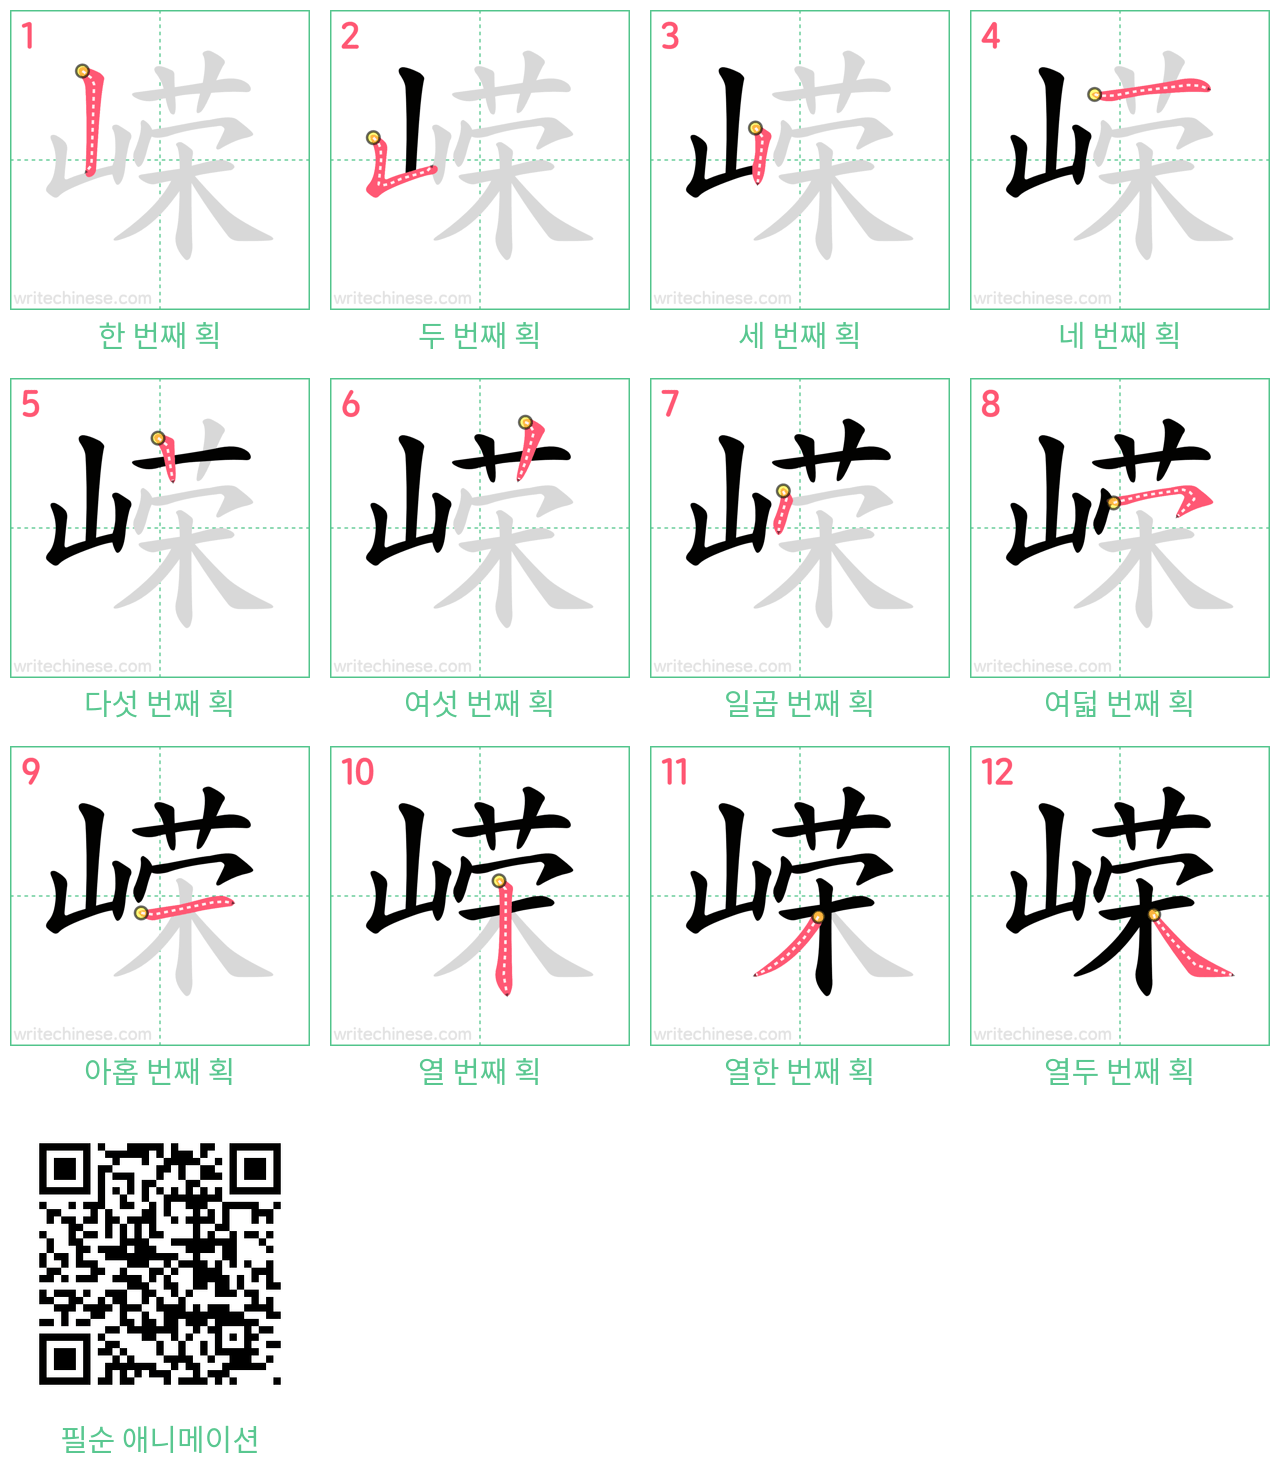 嵘 step-by-step stroke order diagrams